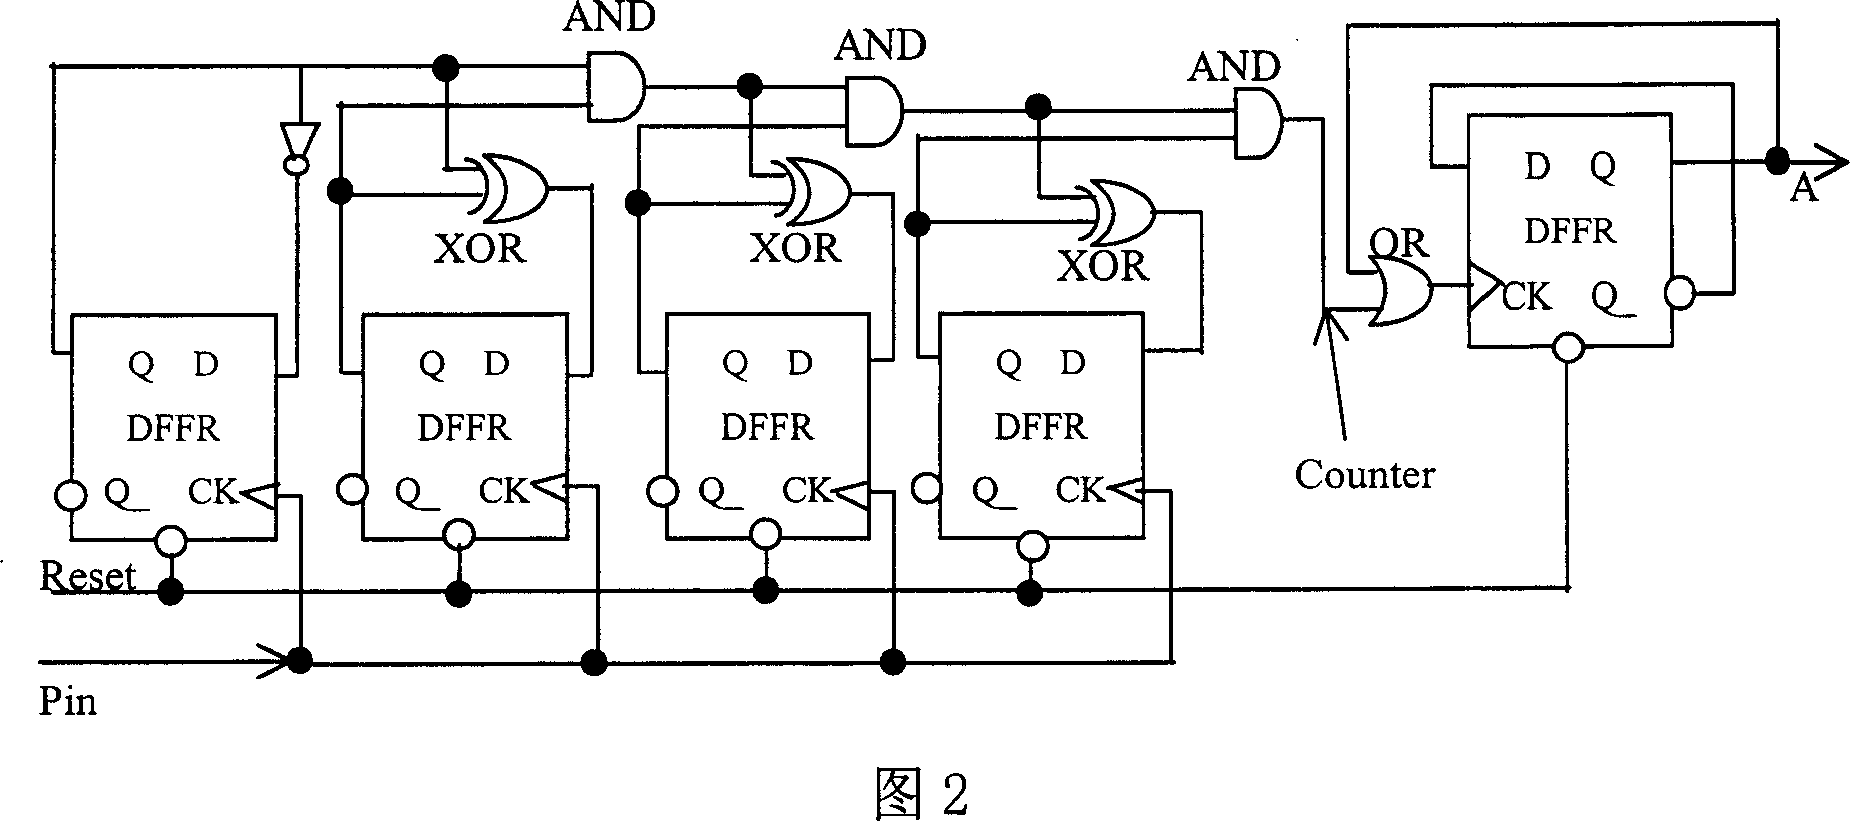 Multifunctional pin circuit